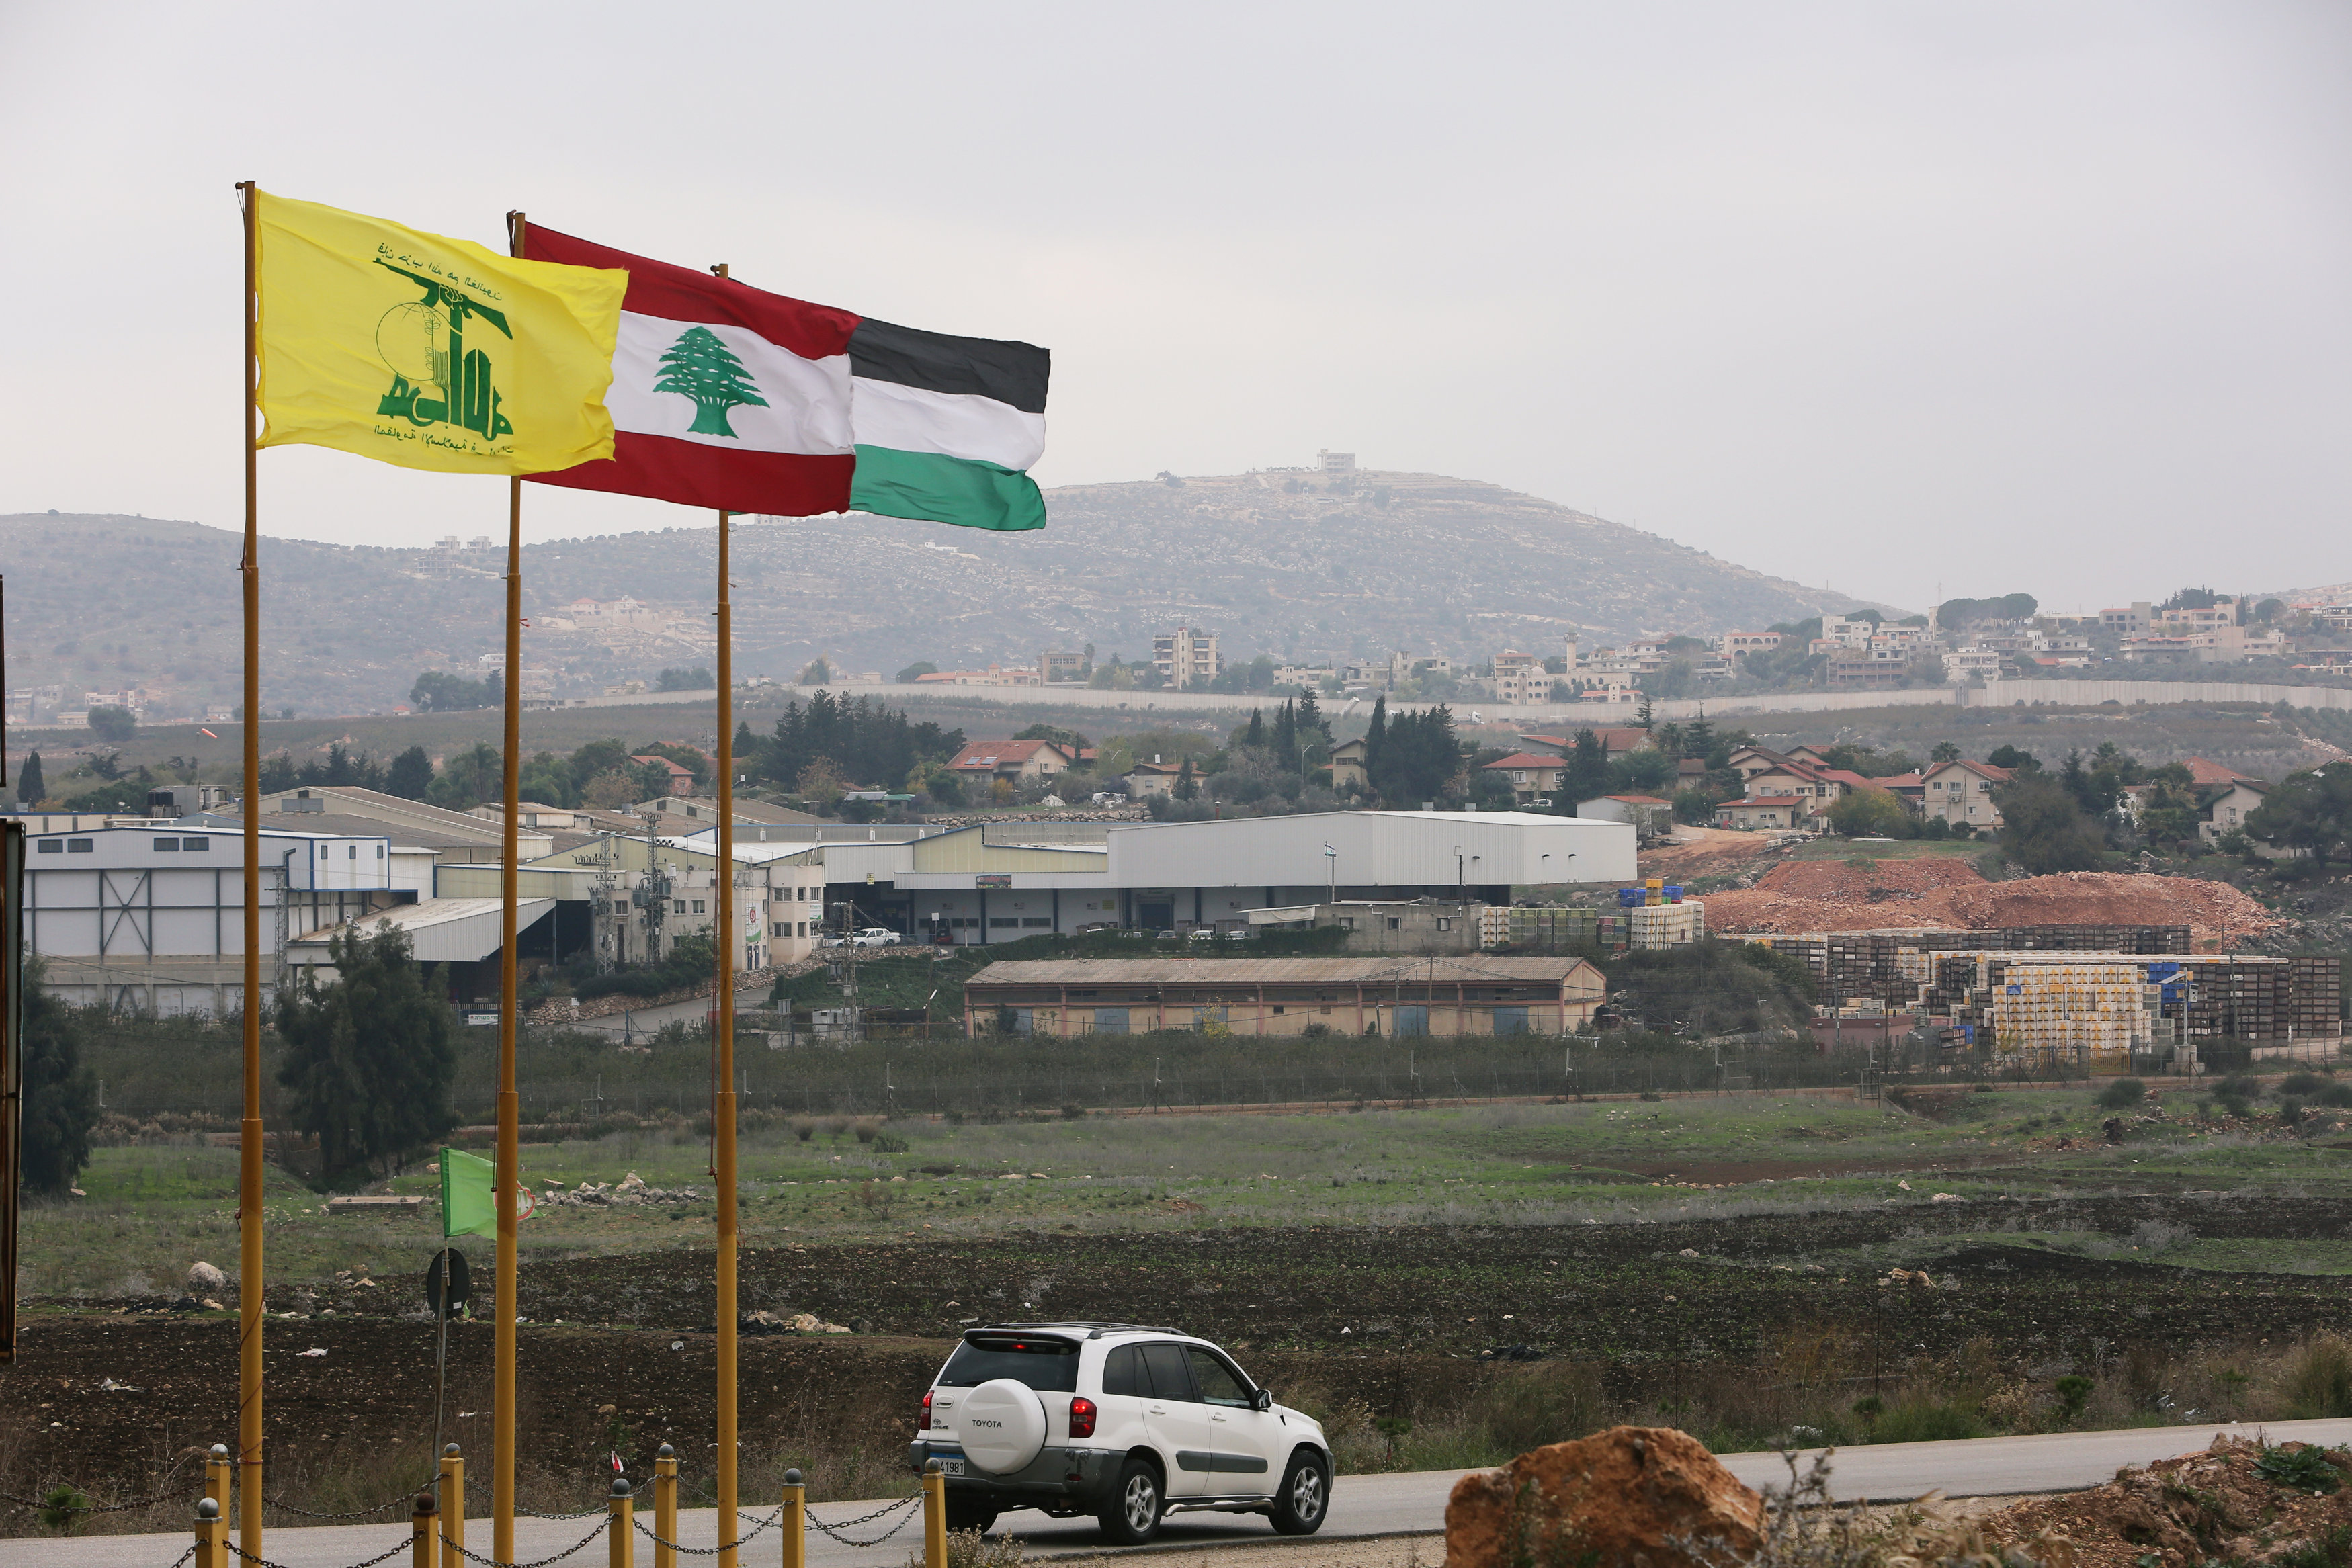 أعلام لبنان وفلسطين وحزب الله فى المنطقة الحدودية